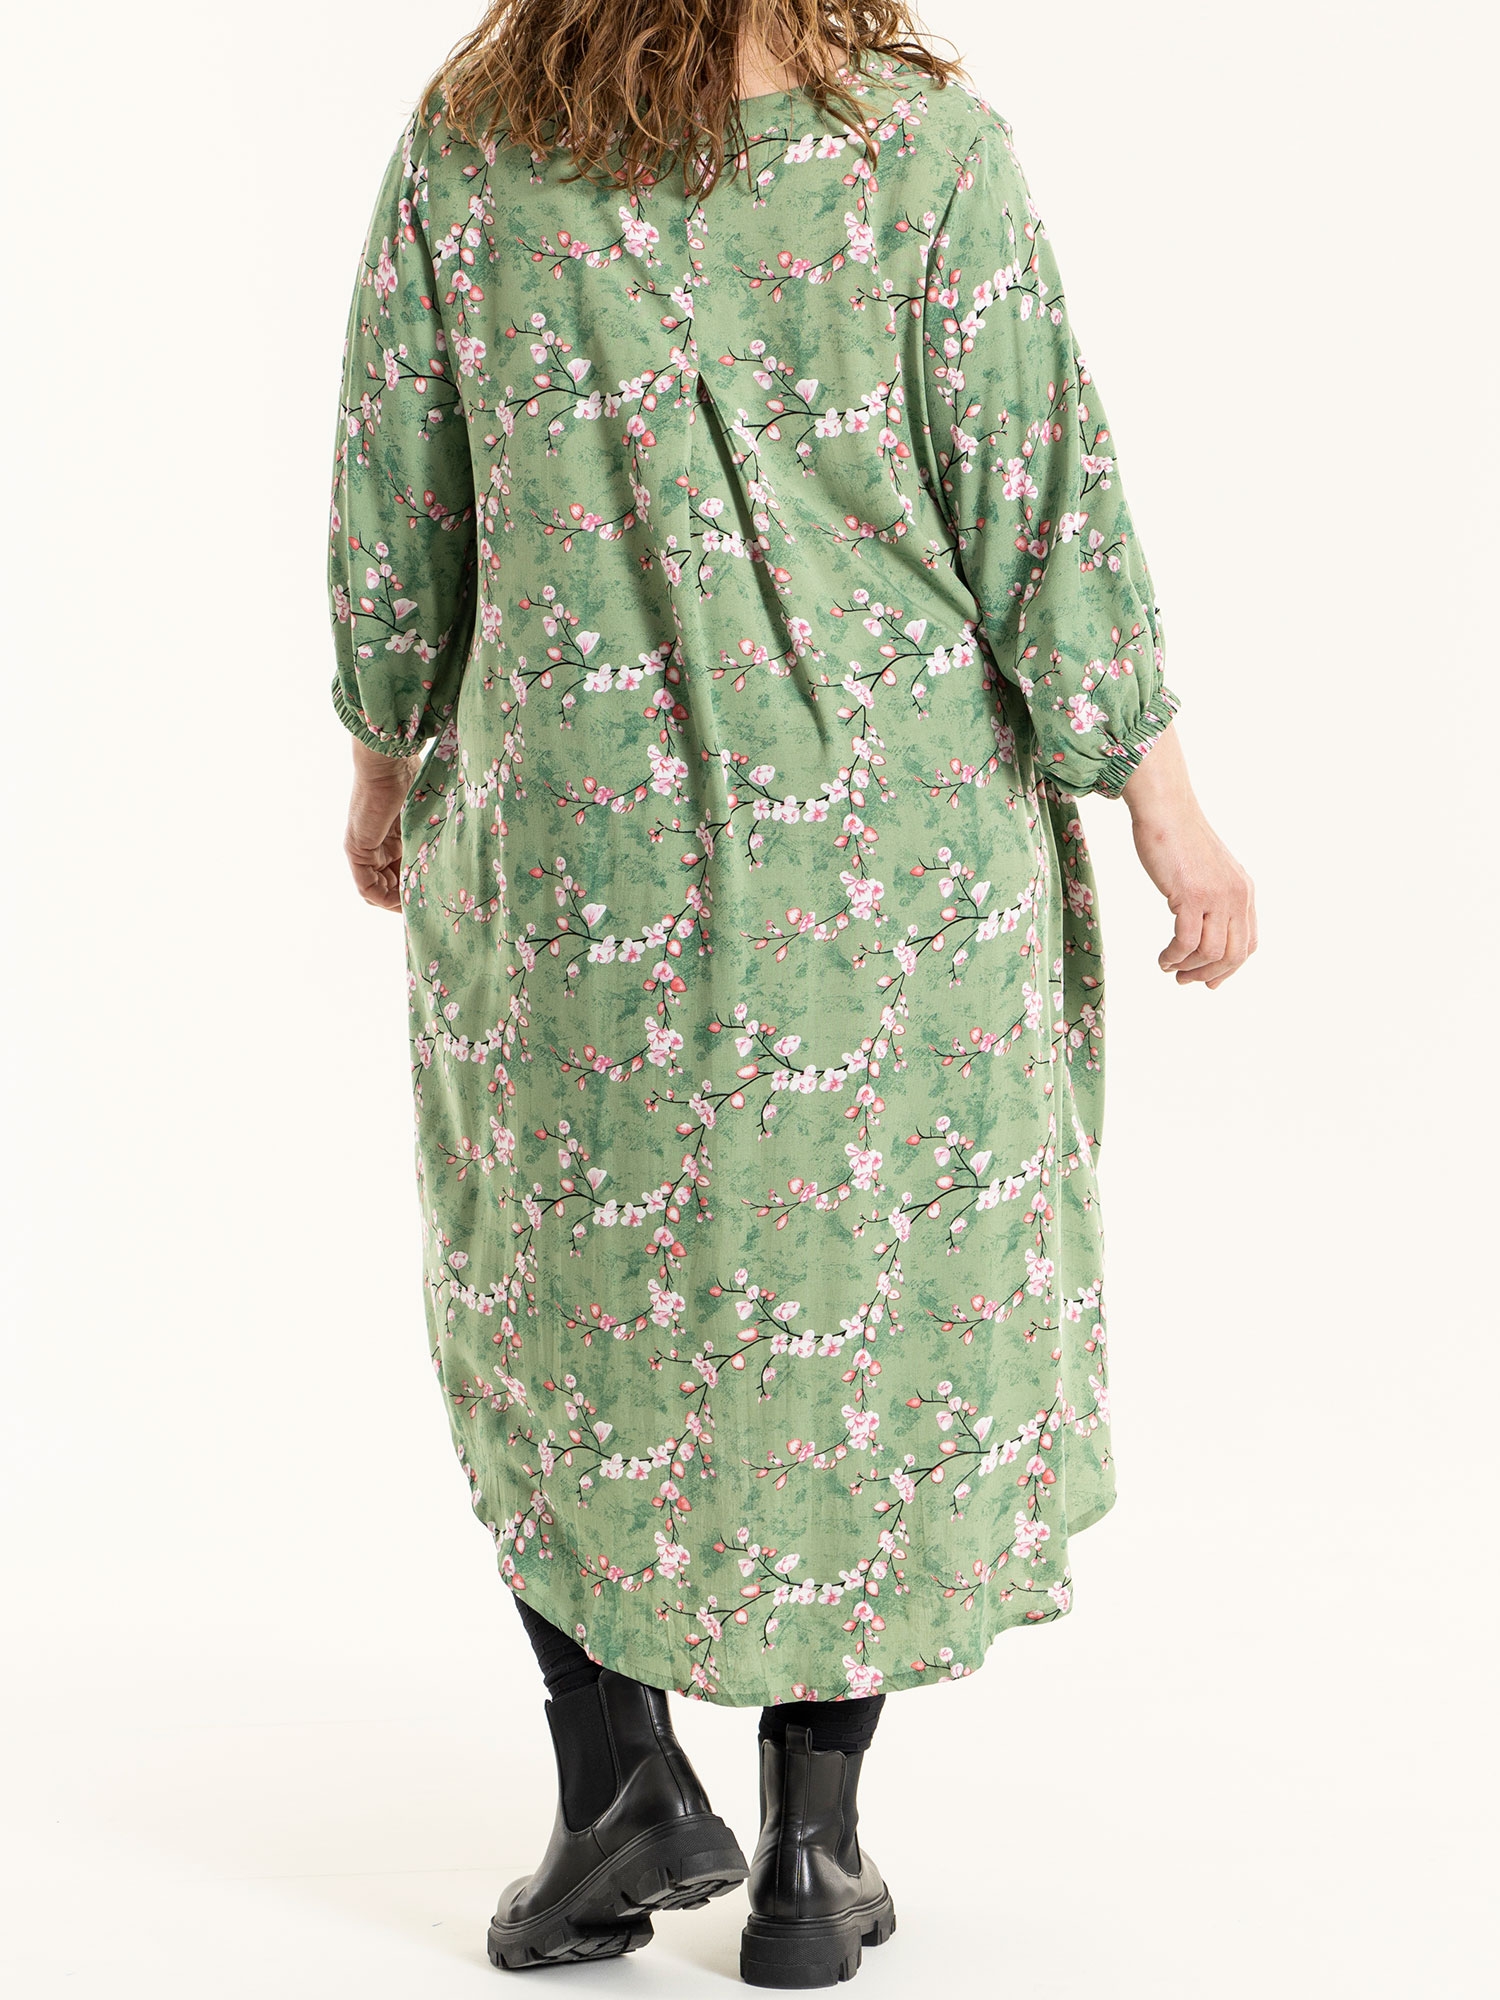 ELSE - Grön viskosklänning med blommönster fra Gozzip